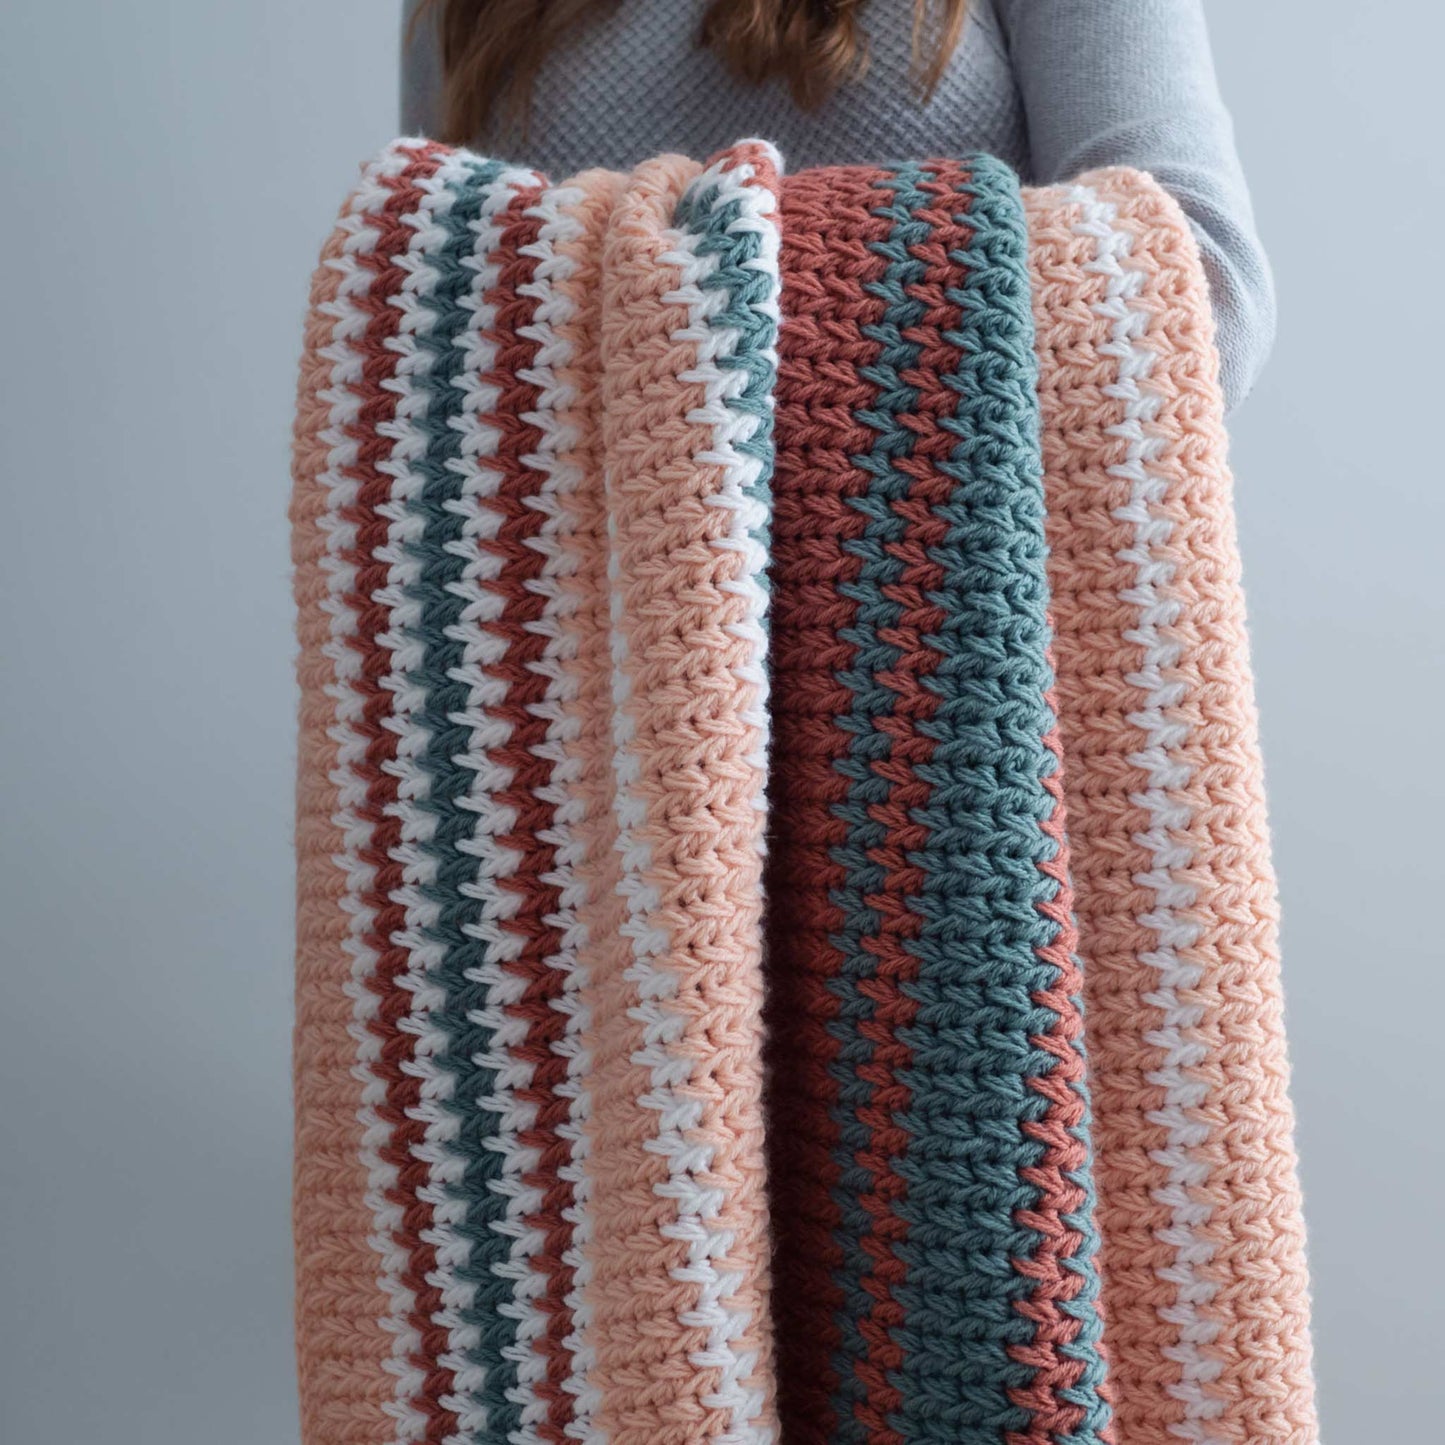 Stash Buster Crochet Blanket PDF